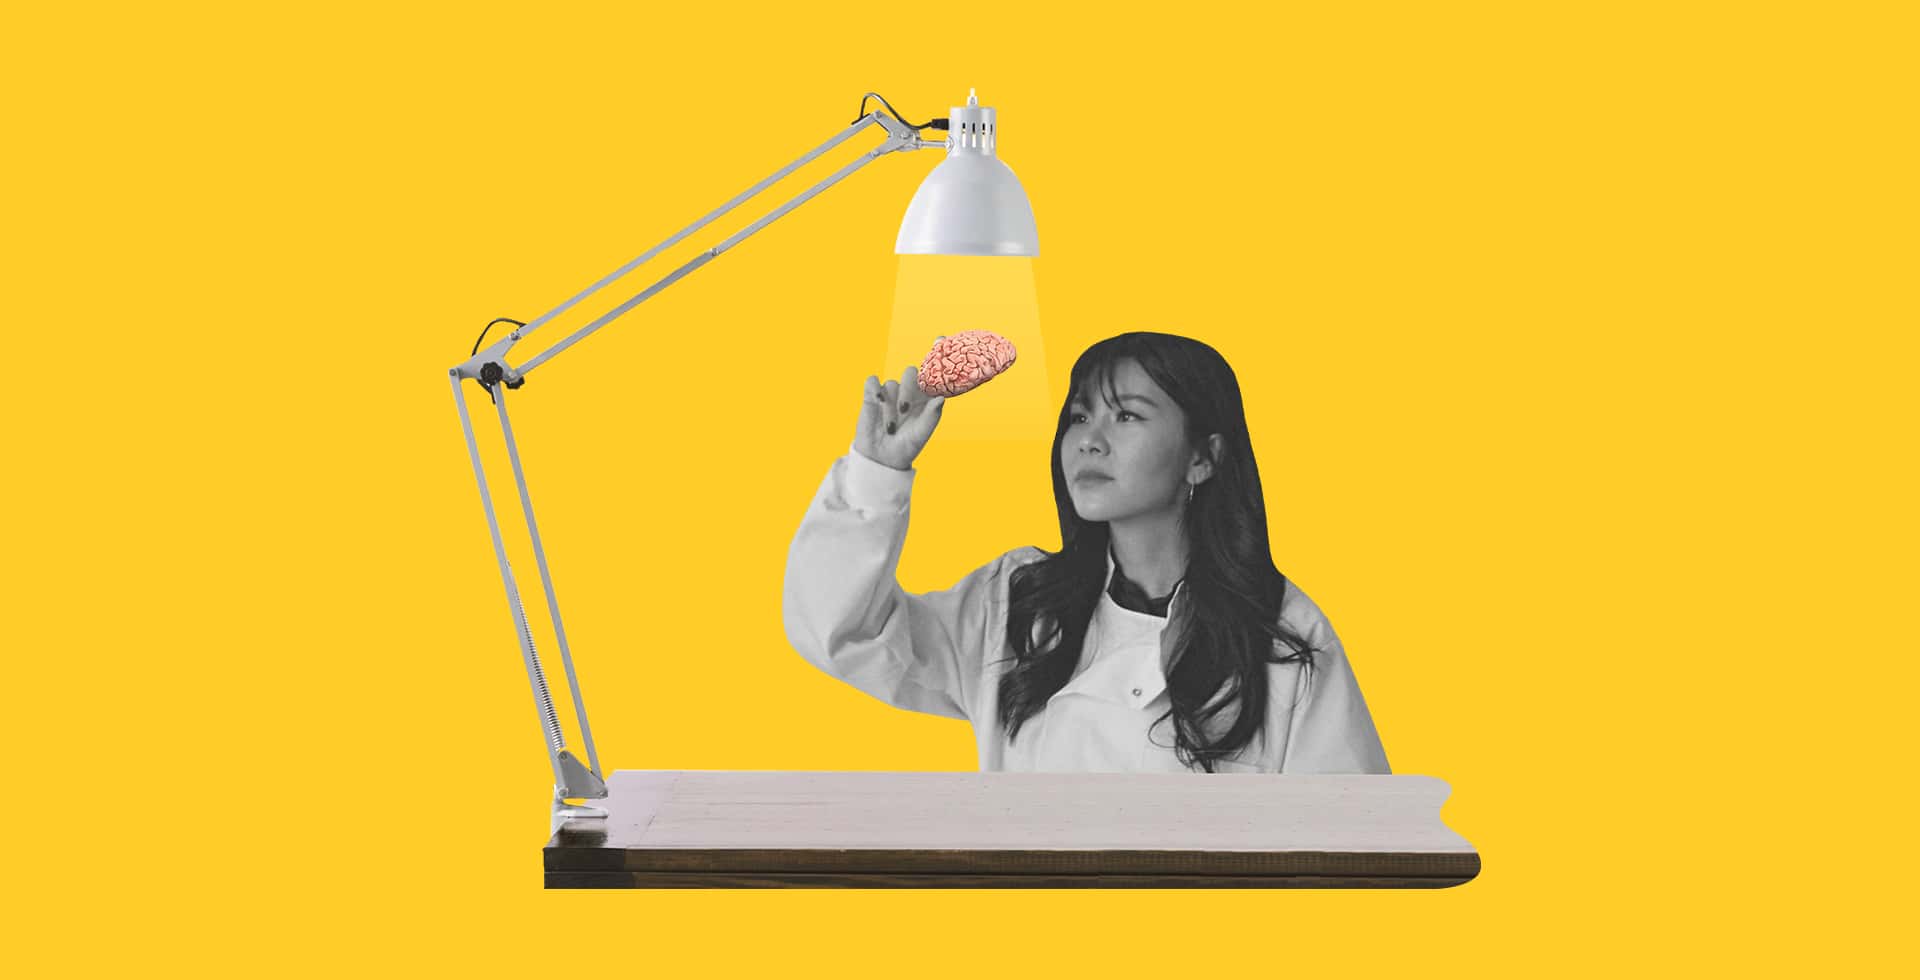 Ett kollage där en forskare håller en liten hjärna under en lampa.